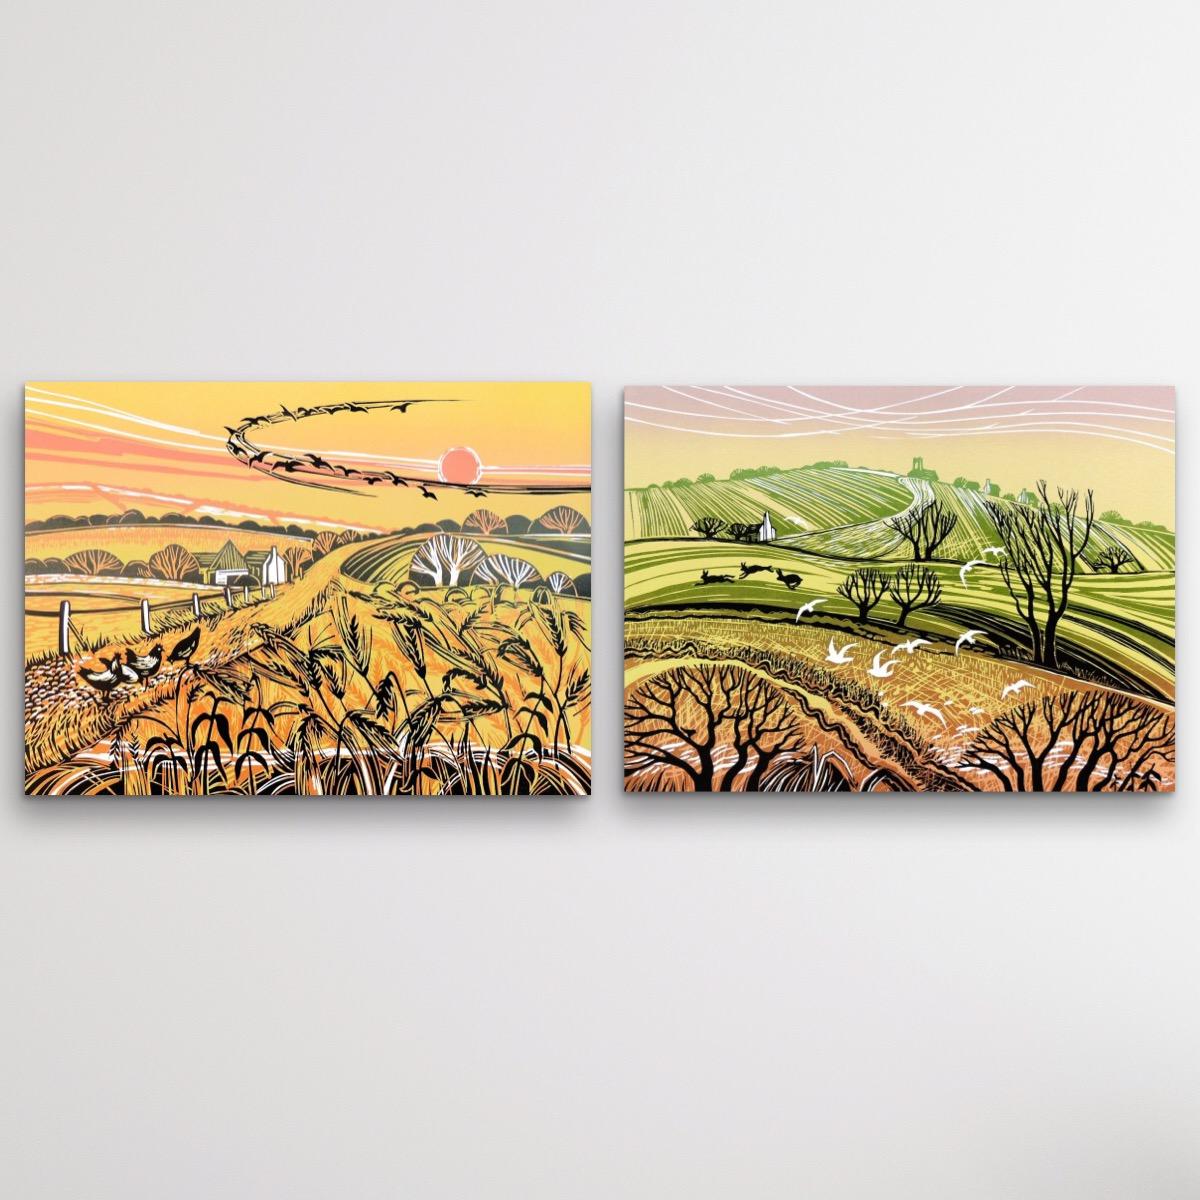 Rob Barnes Landscape Print – Harvest Fields and Hill Flight, Diptychon, 2 Landschaftsdrucke, limitierte Auflage